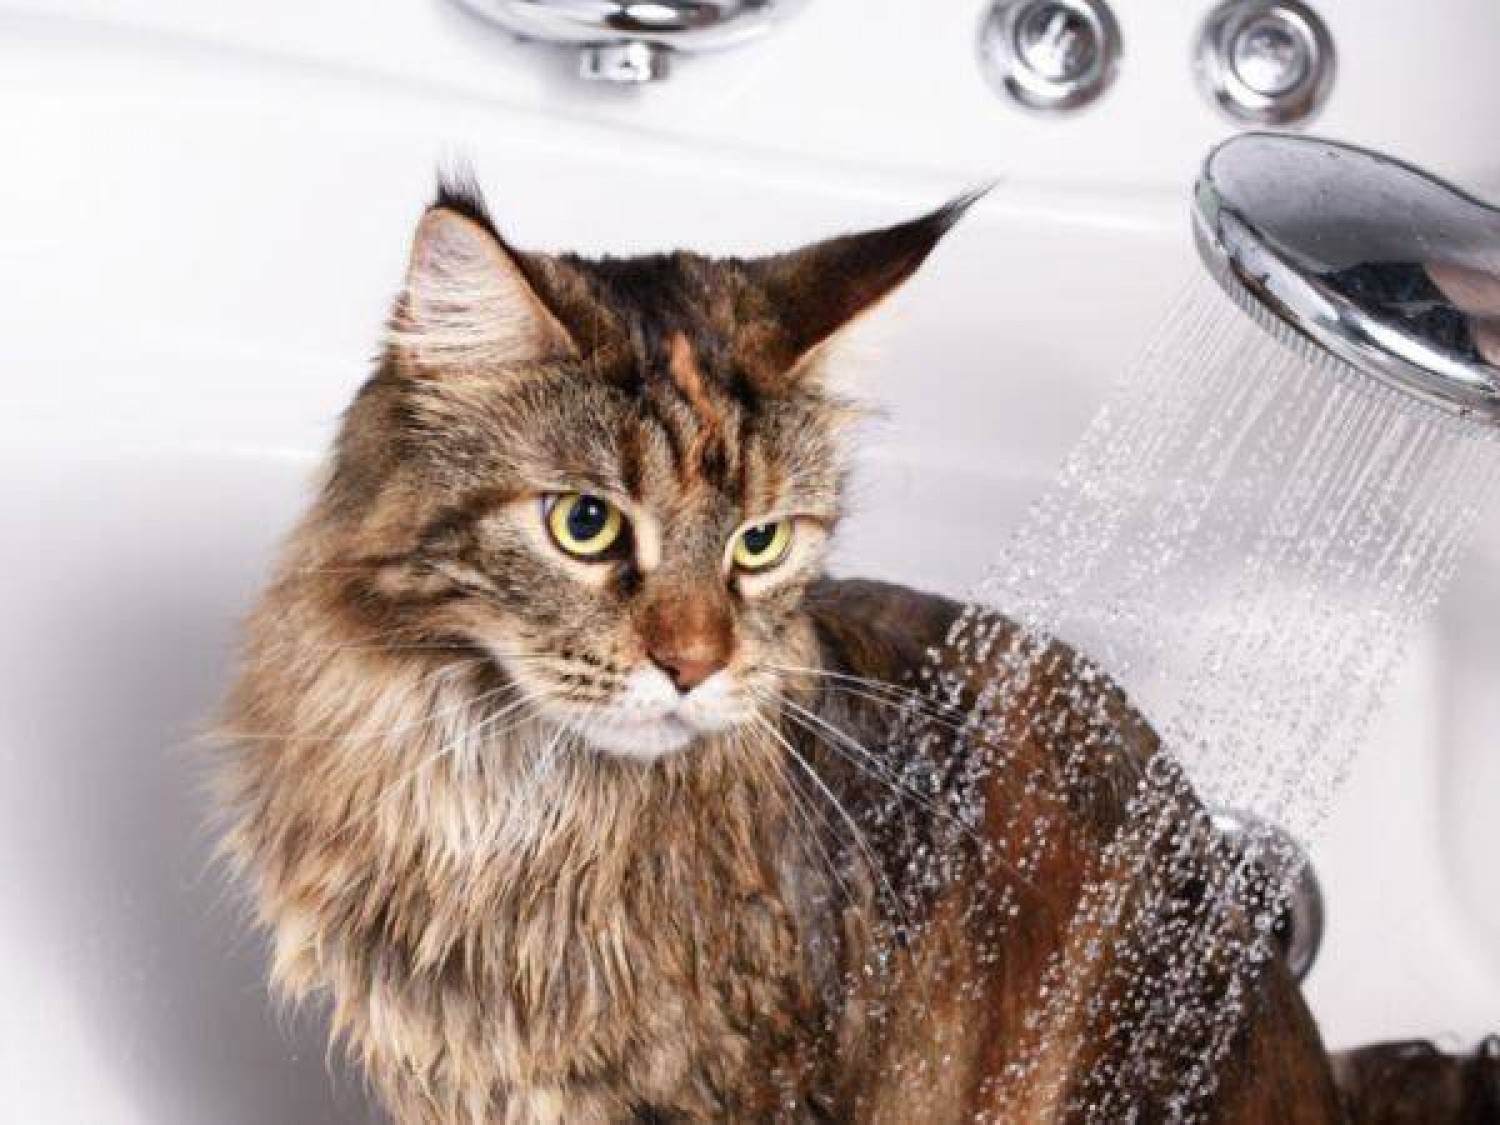 Jak zapobiegać chorobom pasożytniczym u kotów?